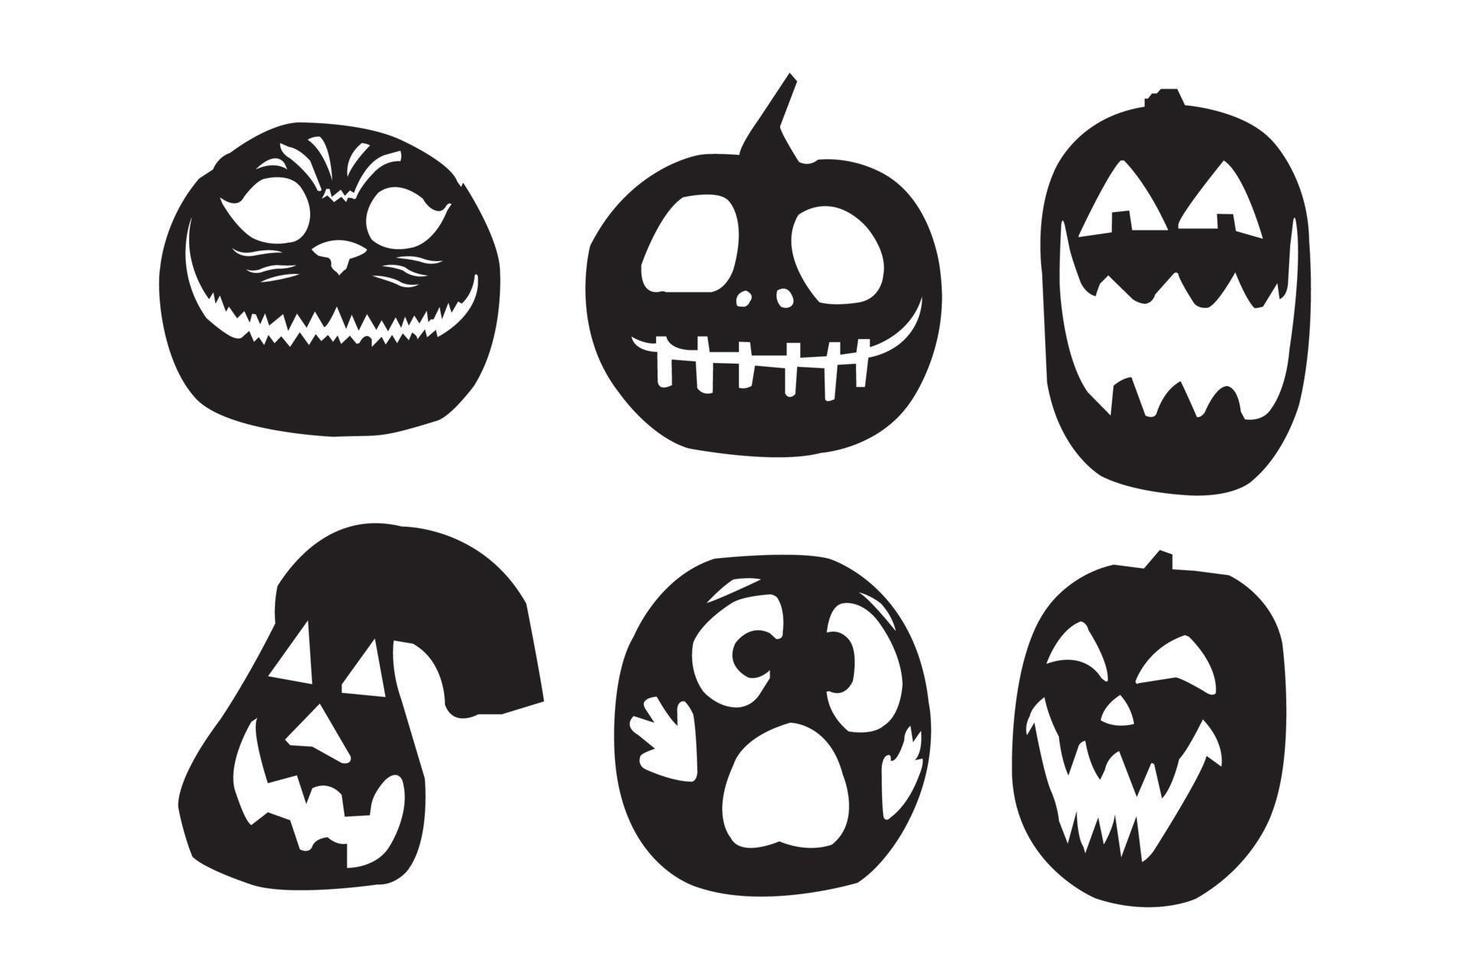 Halloween pumpkin silhouette vector illustration.